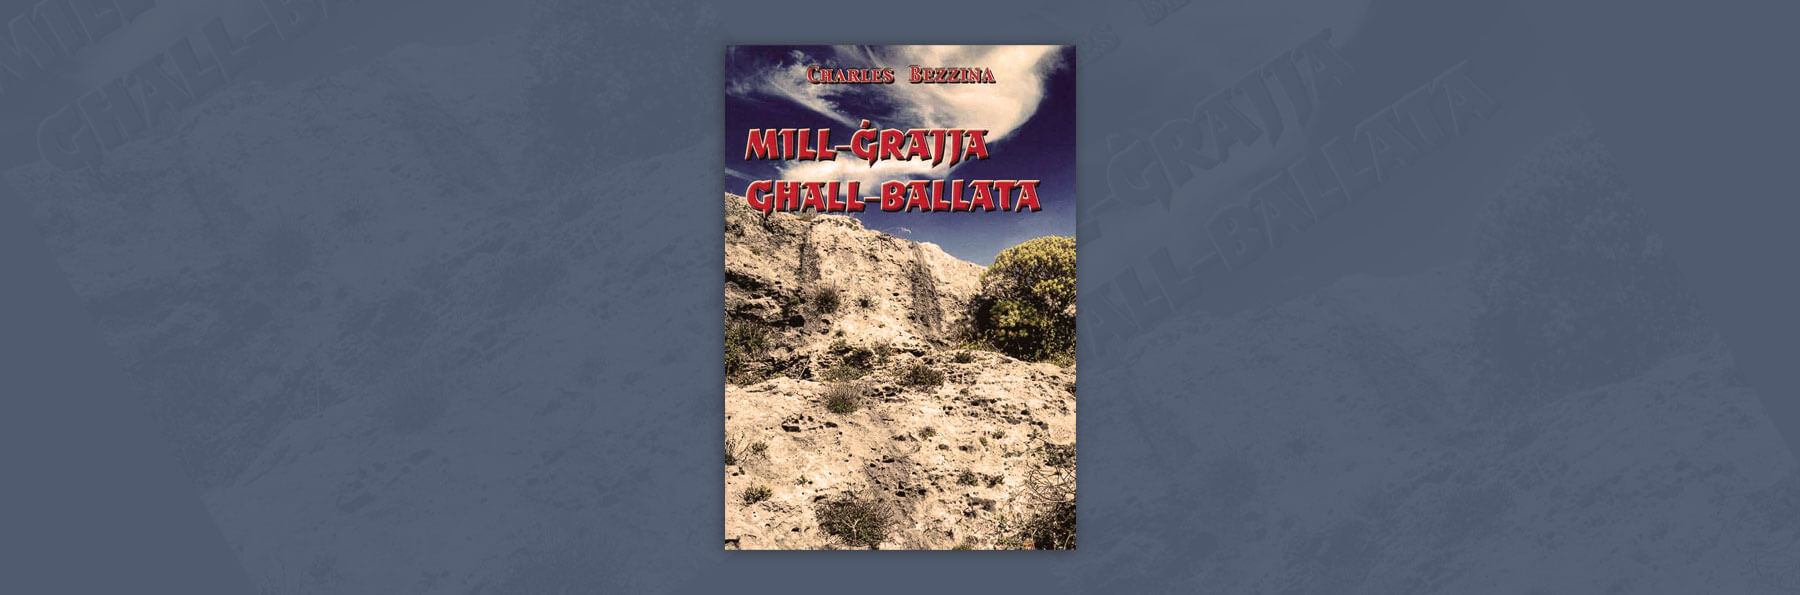 Mill-Ġrajja għall-Ballata – Charles Bezzina